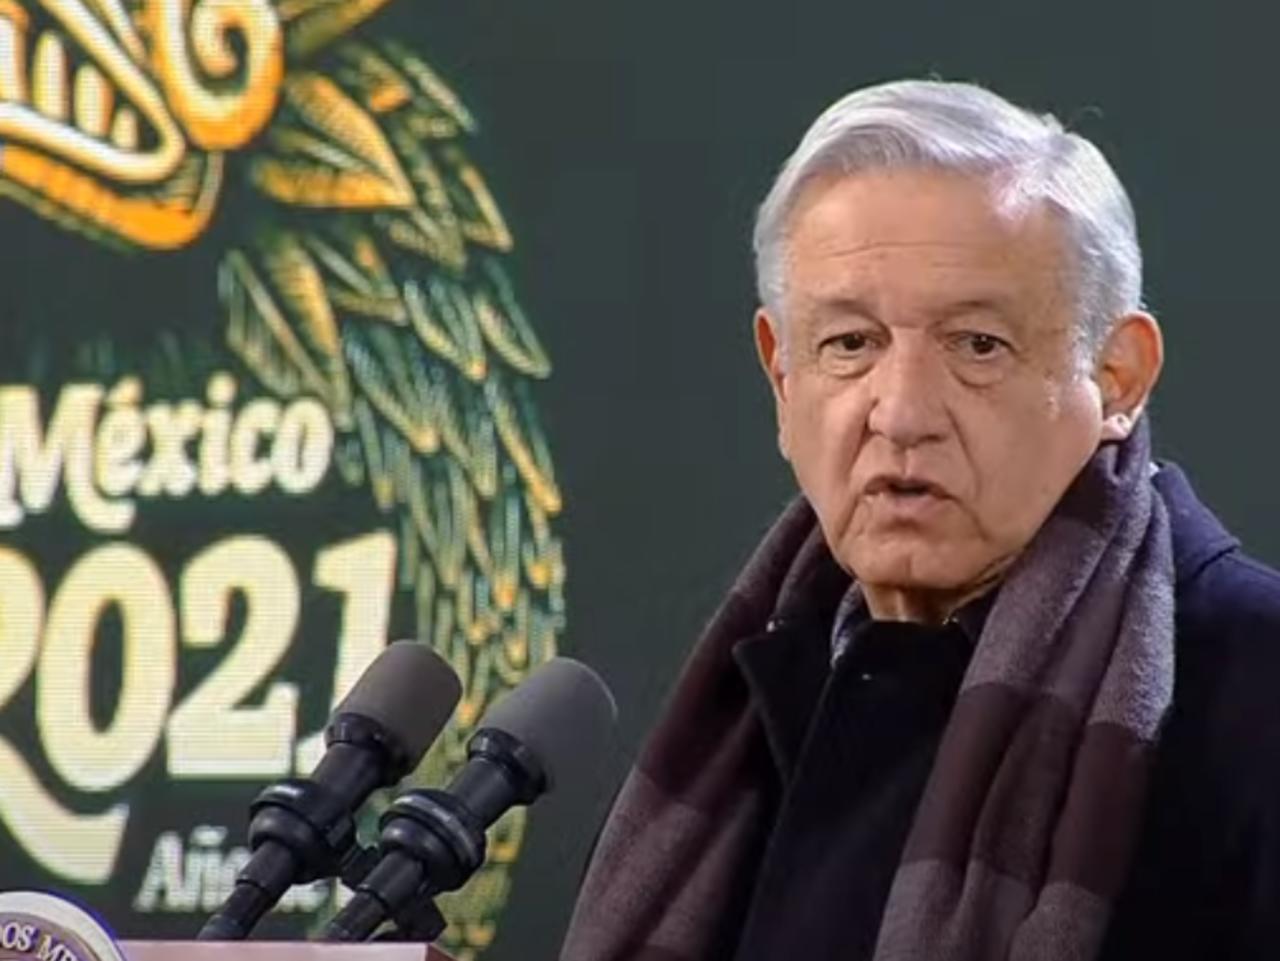 El presidente Andrés Manuel López Obrador insistió en su pronóstico de crecimiento de 6 % del PIB para 2021, pese a revelarse este jueves que la economía se contrajo un 0.4 % trimestral de julio a septiembre.